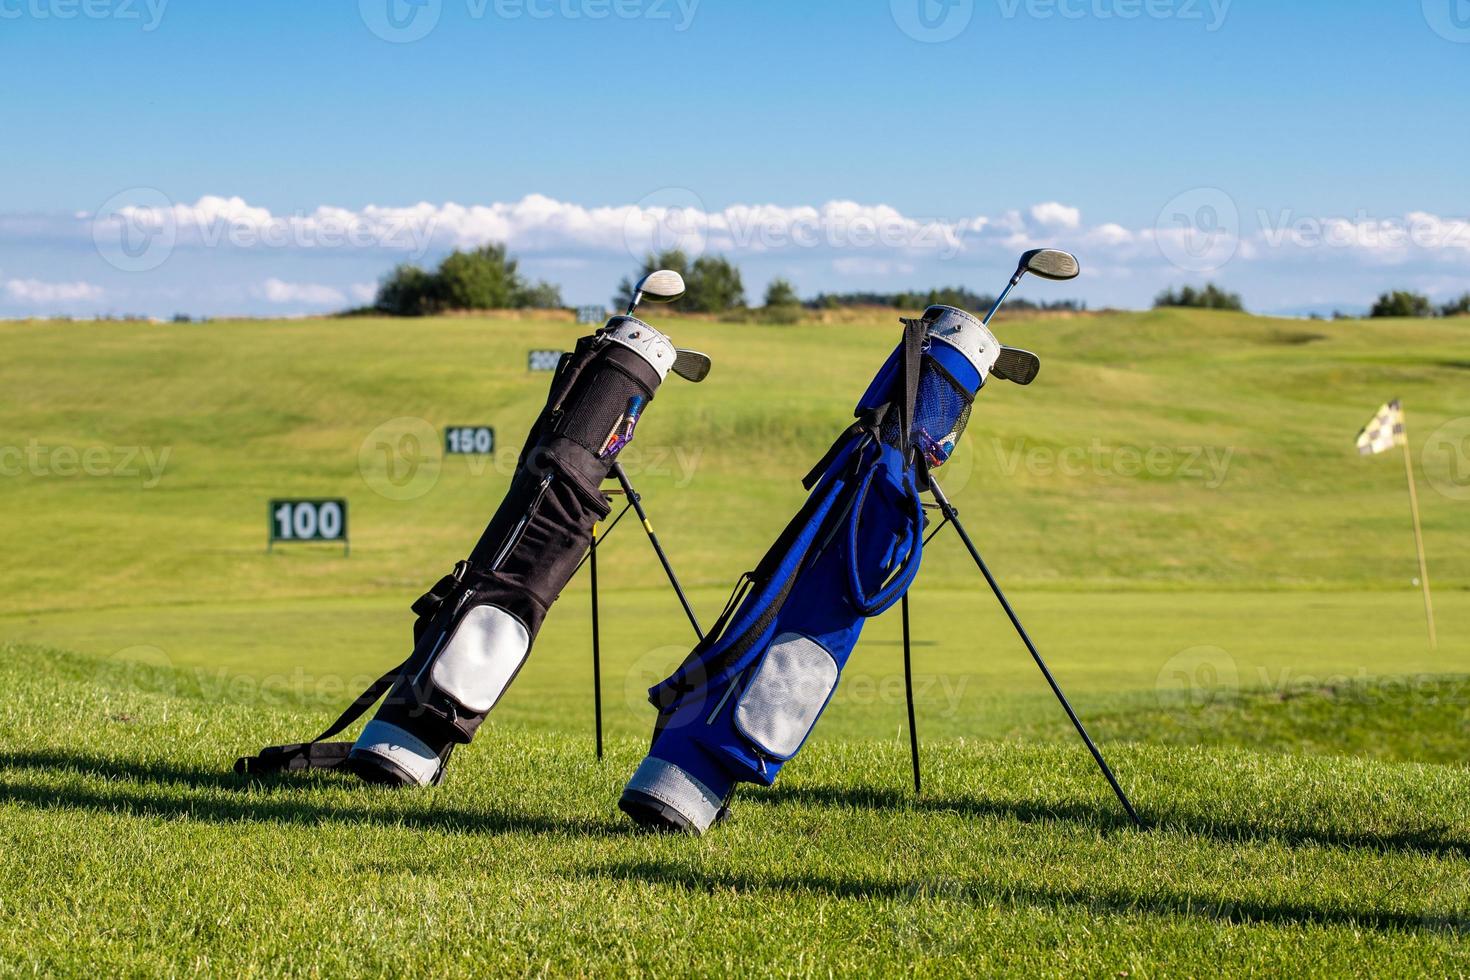 mazze da golf in sacche sdraiate sul campo da golf in una giornata di sole foto